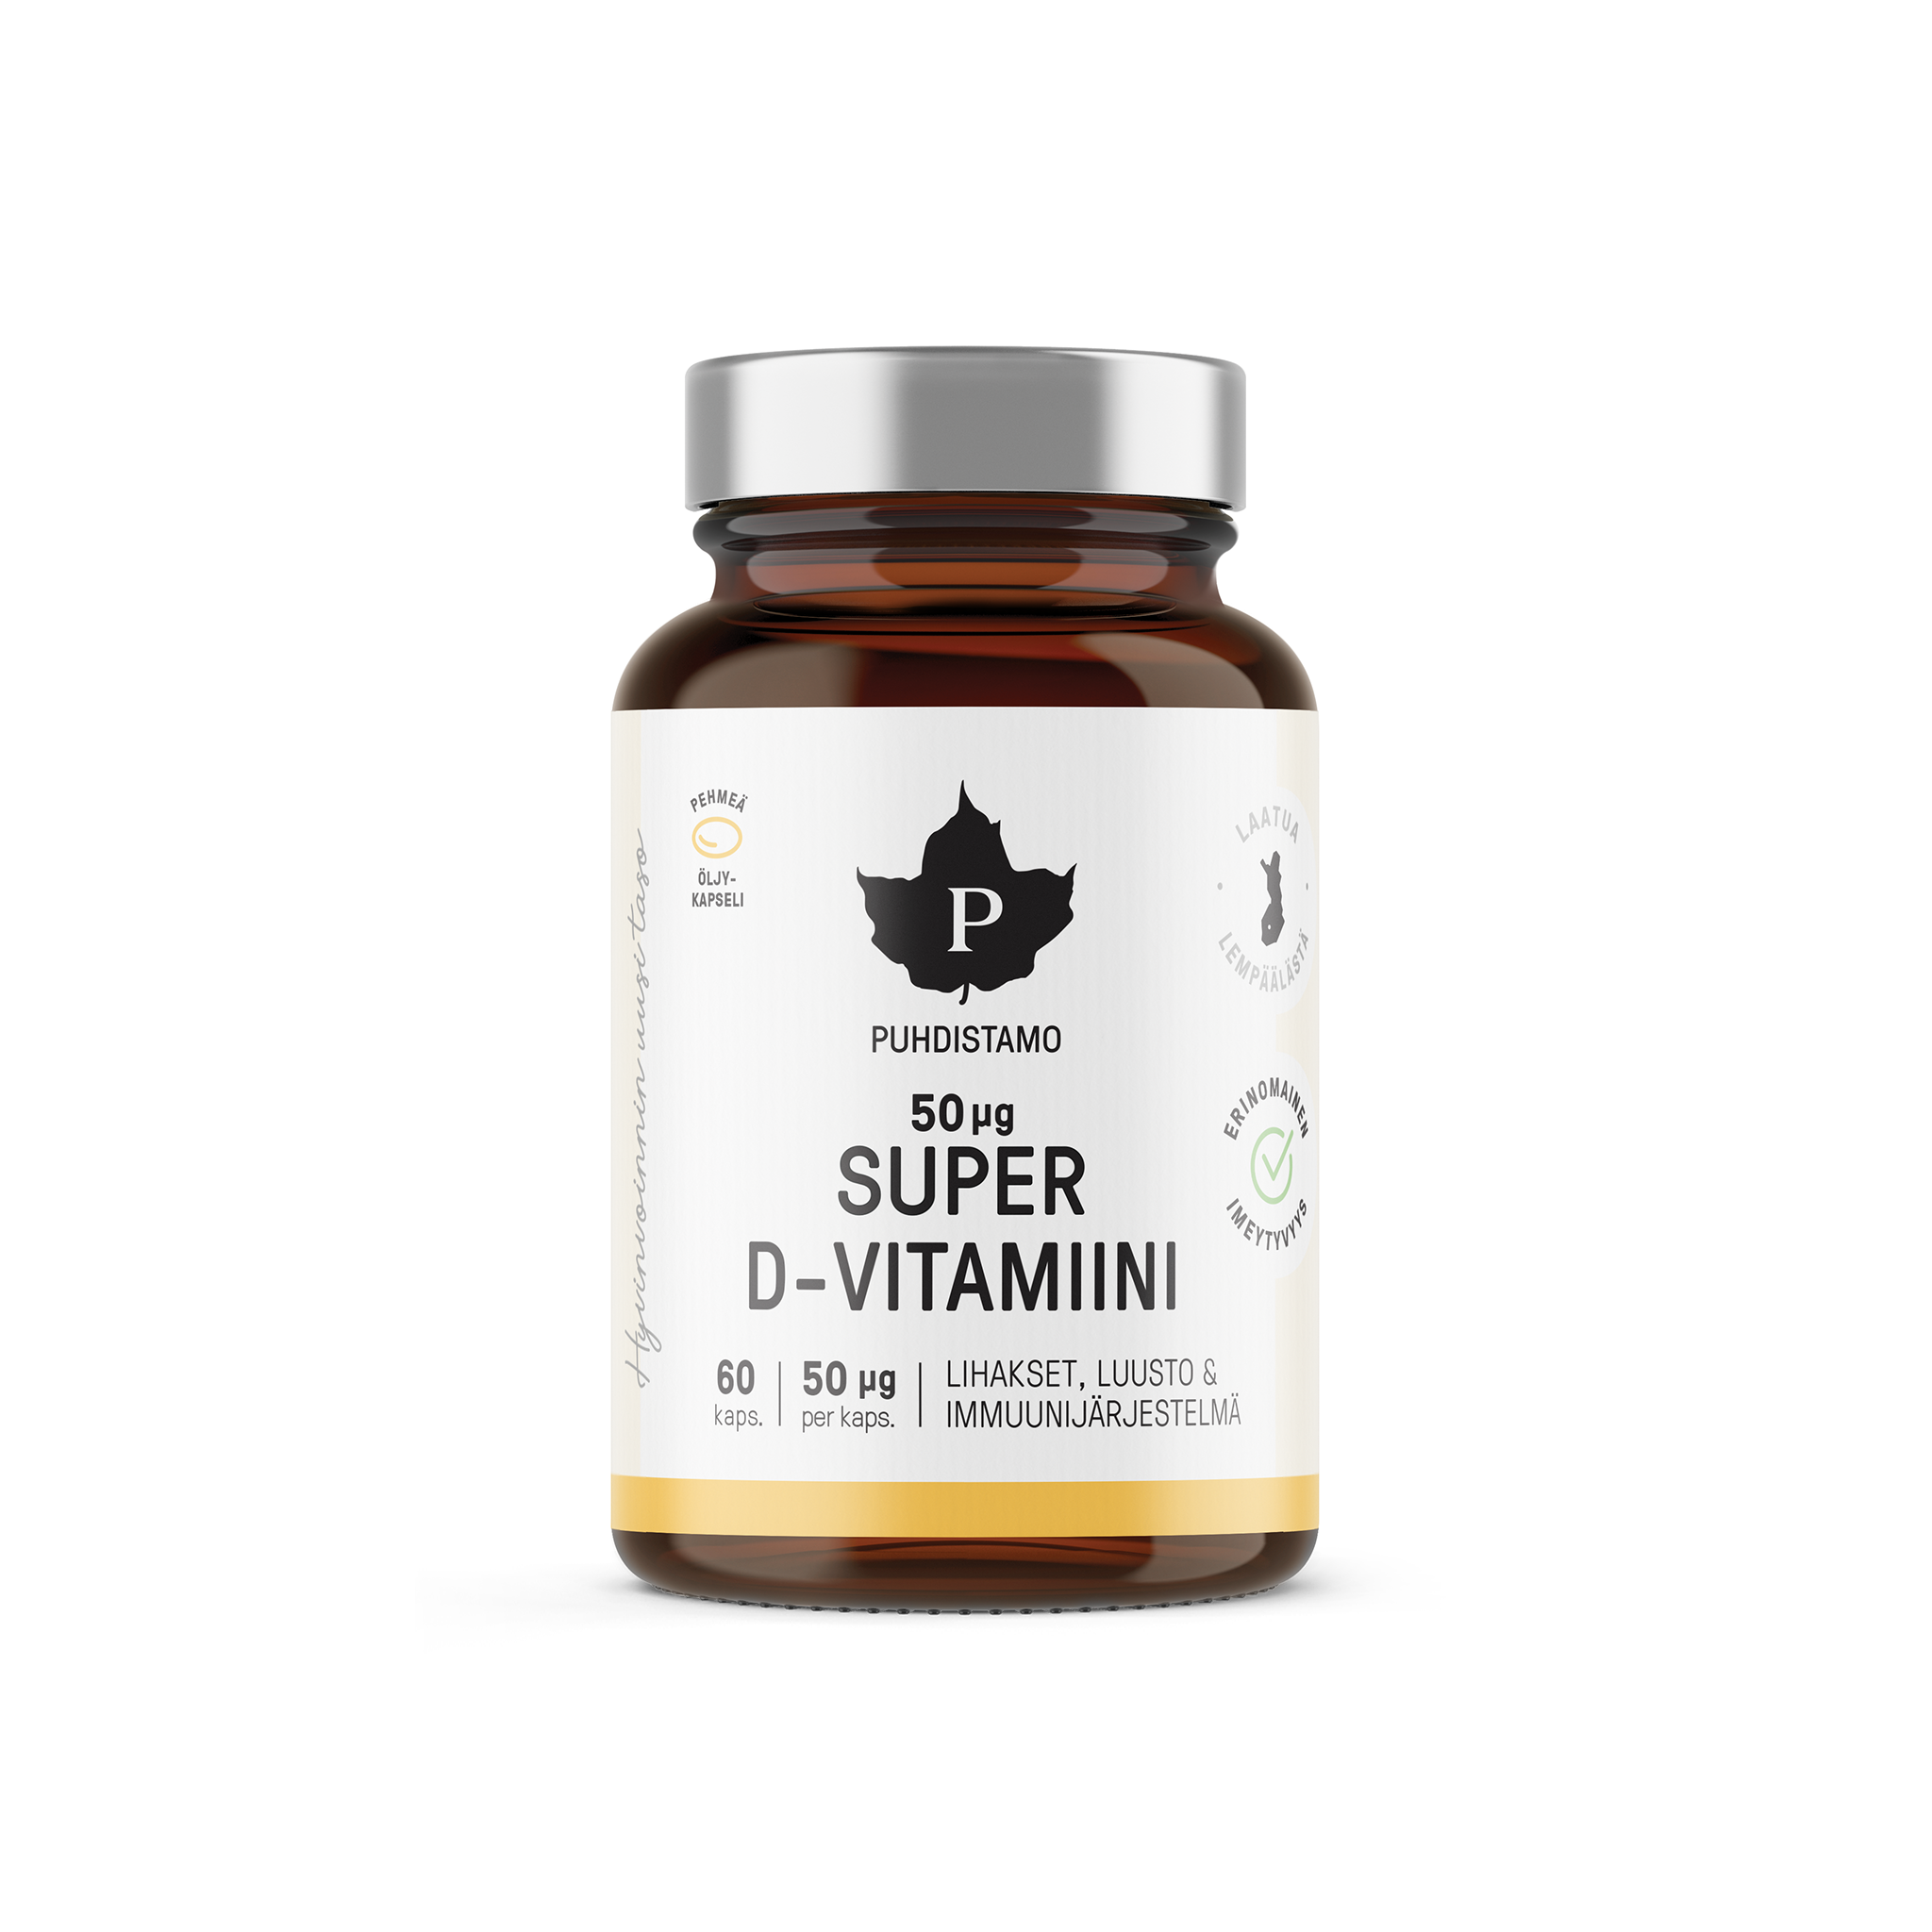 Puhdistamo Super D-vitamiinikapseli 50 μg, 60 kaps